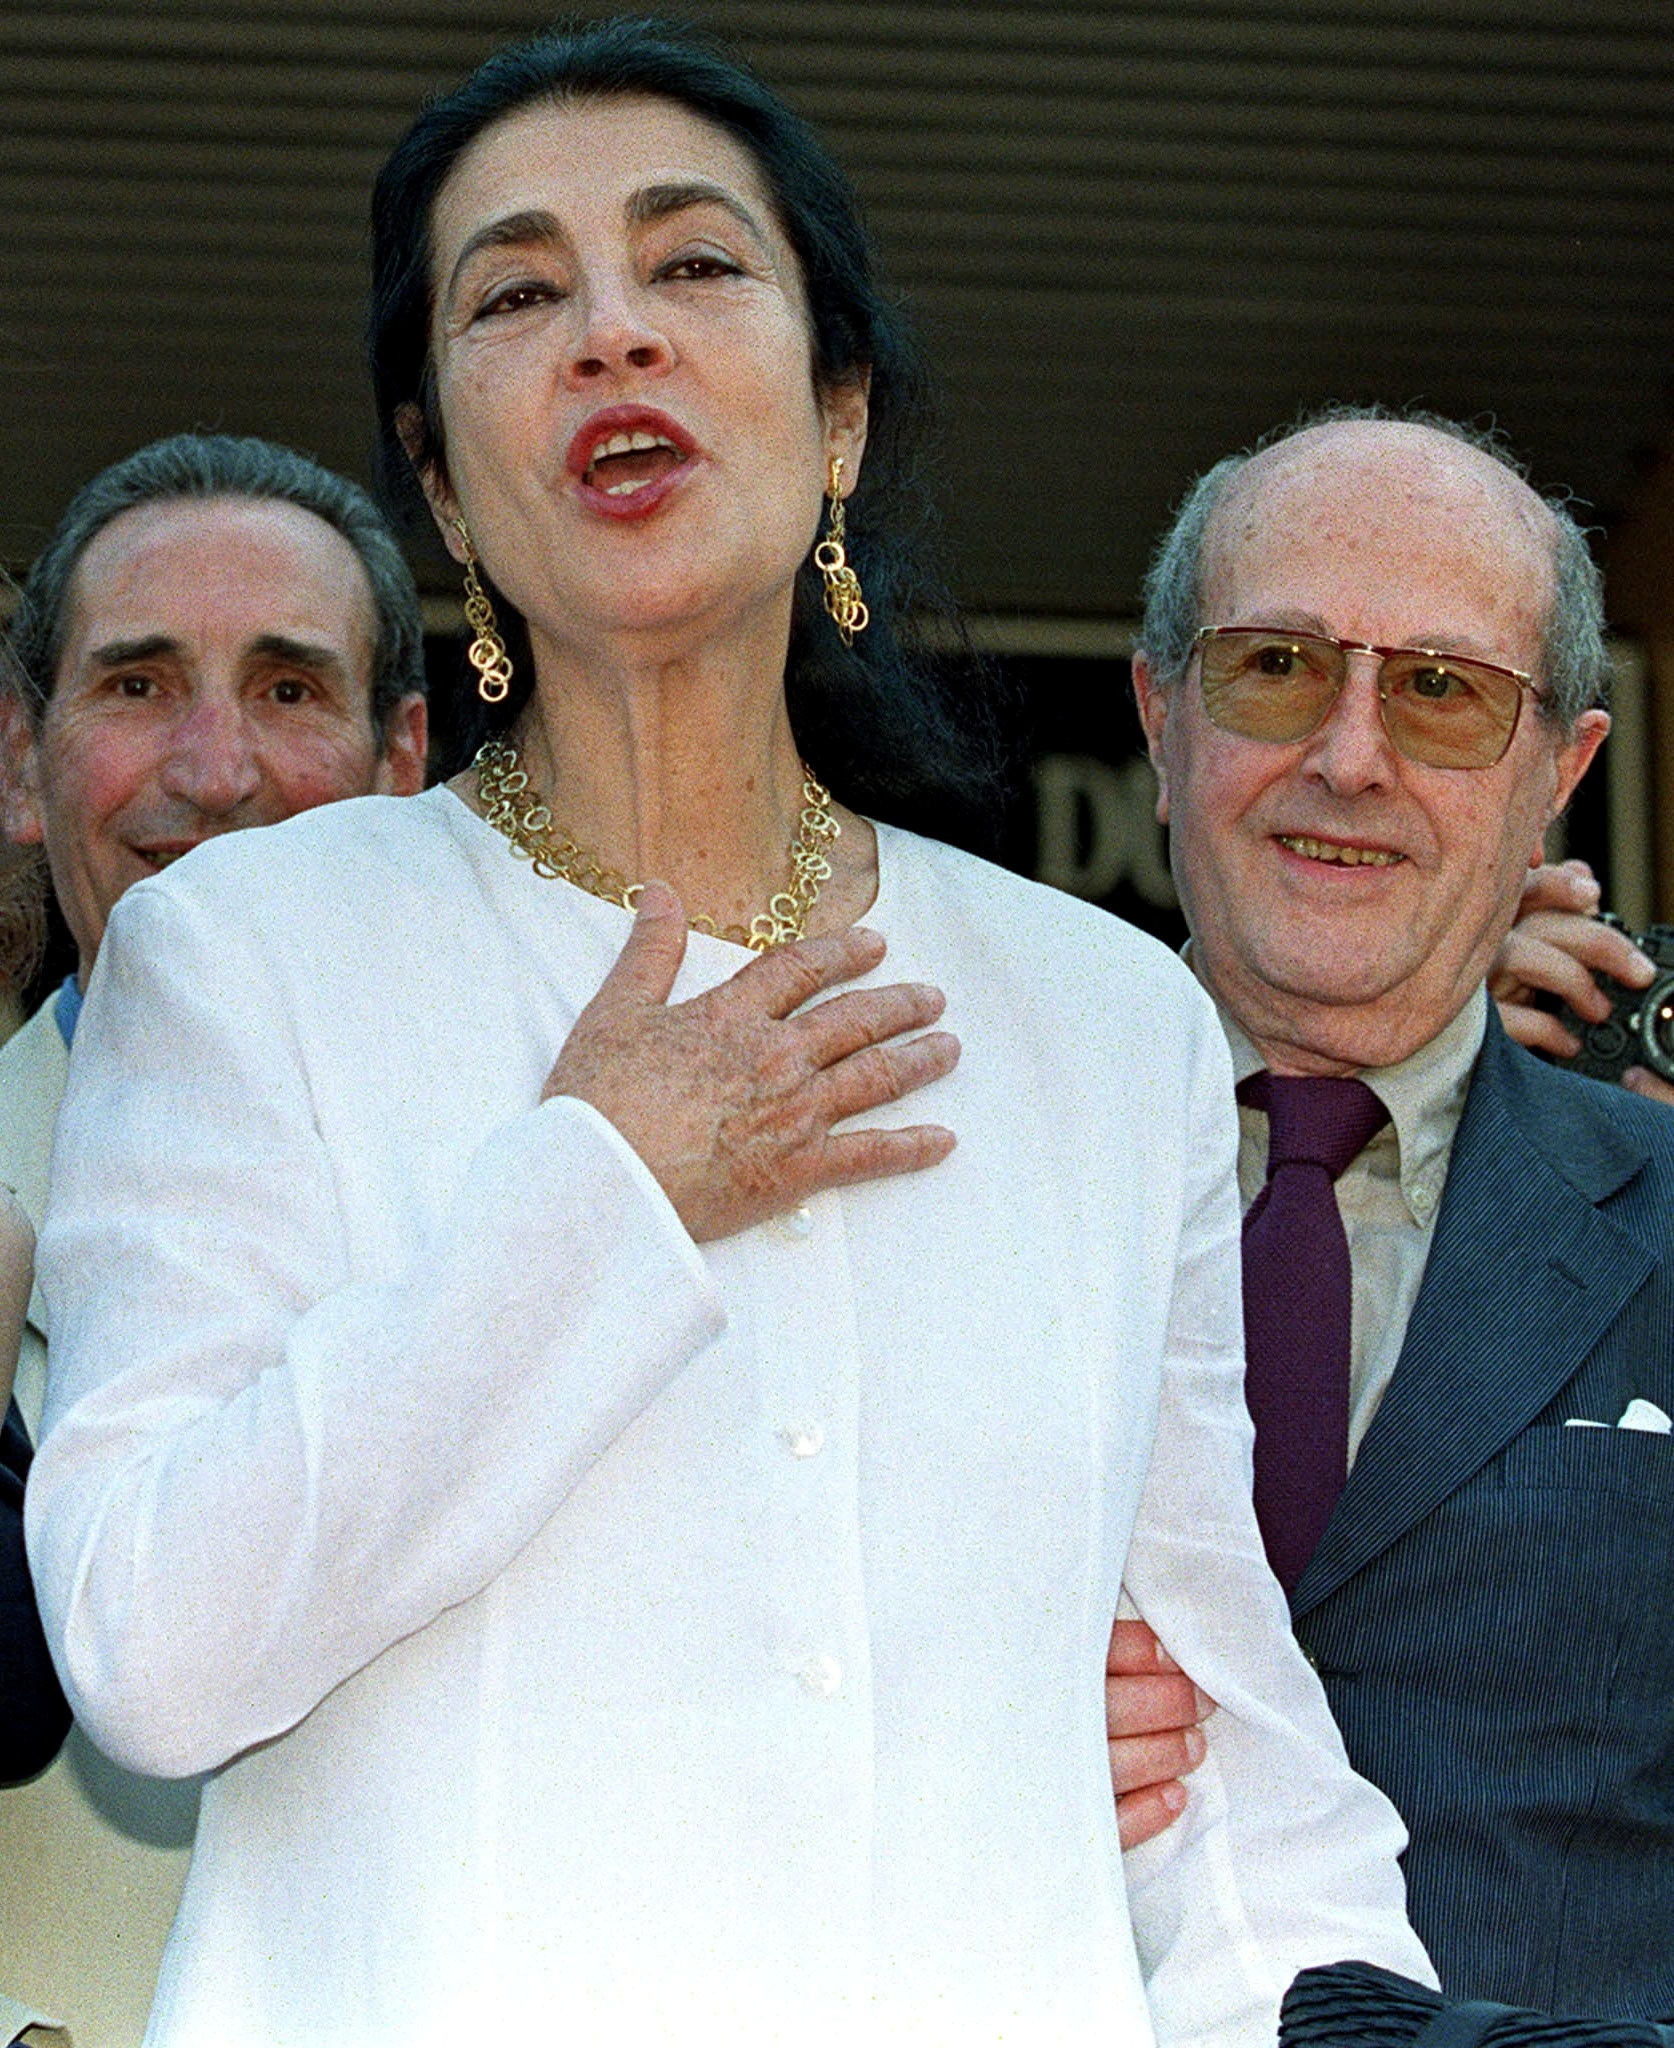 FOTO DE ARCHIVO: La actriz griega Irene Papas llega a la proyección de su película "Inquietud", en la 51ª edición del Festival de Cine de Cannes en 1997 (Reuters)